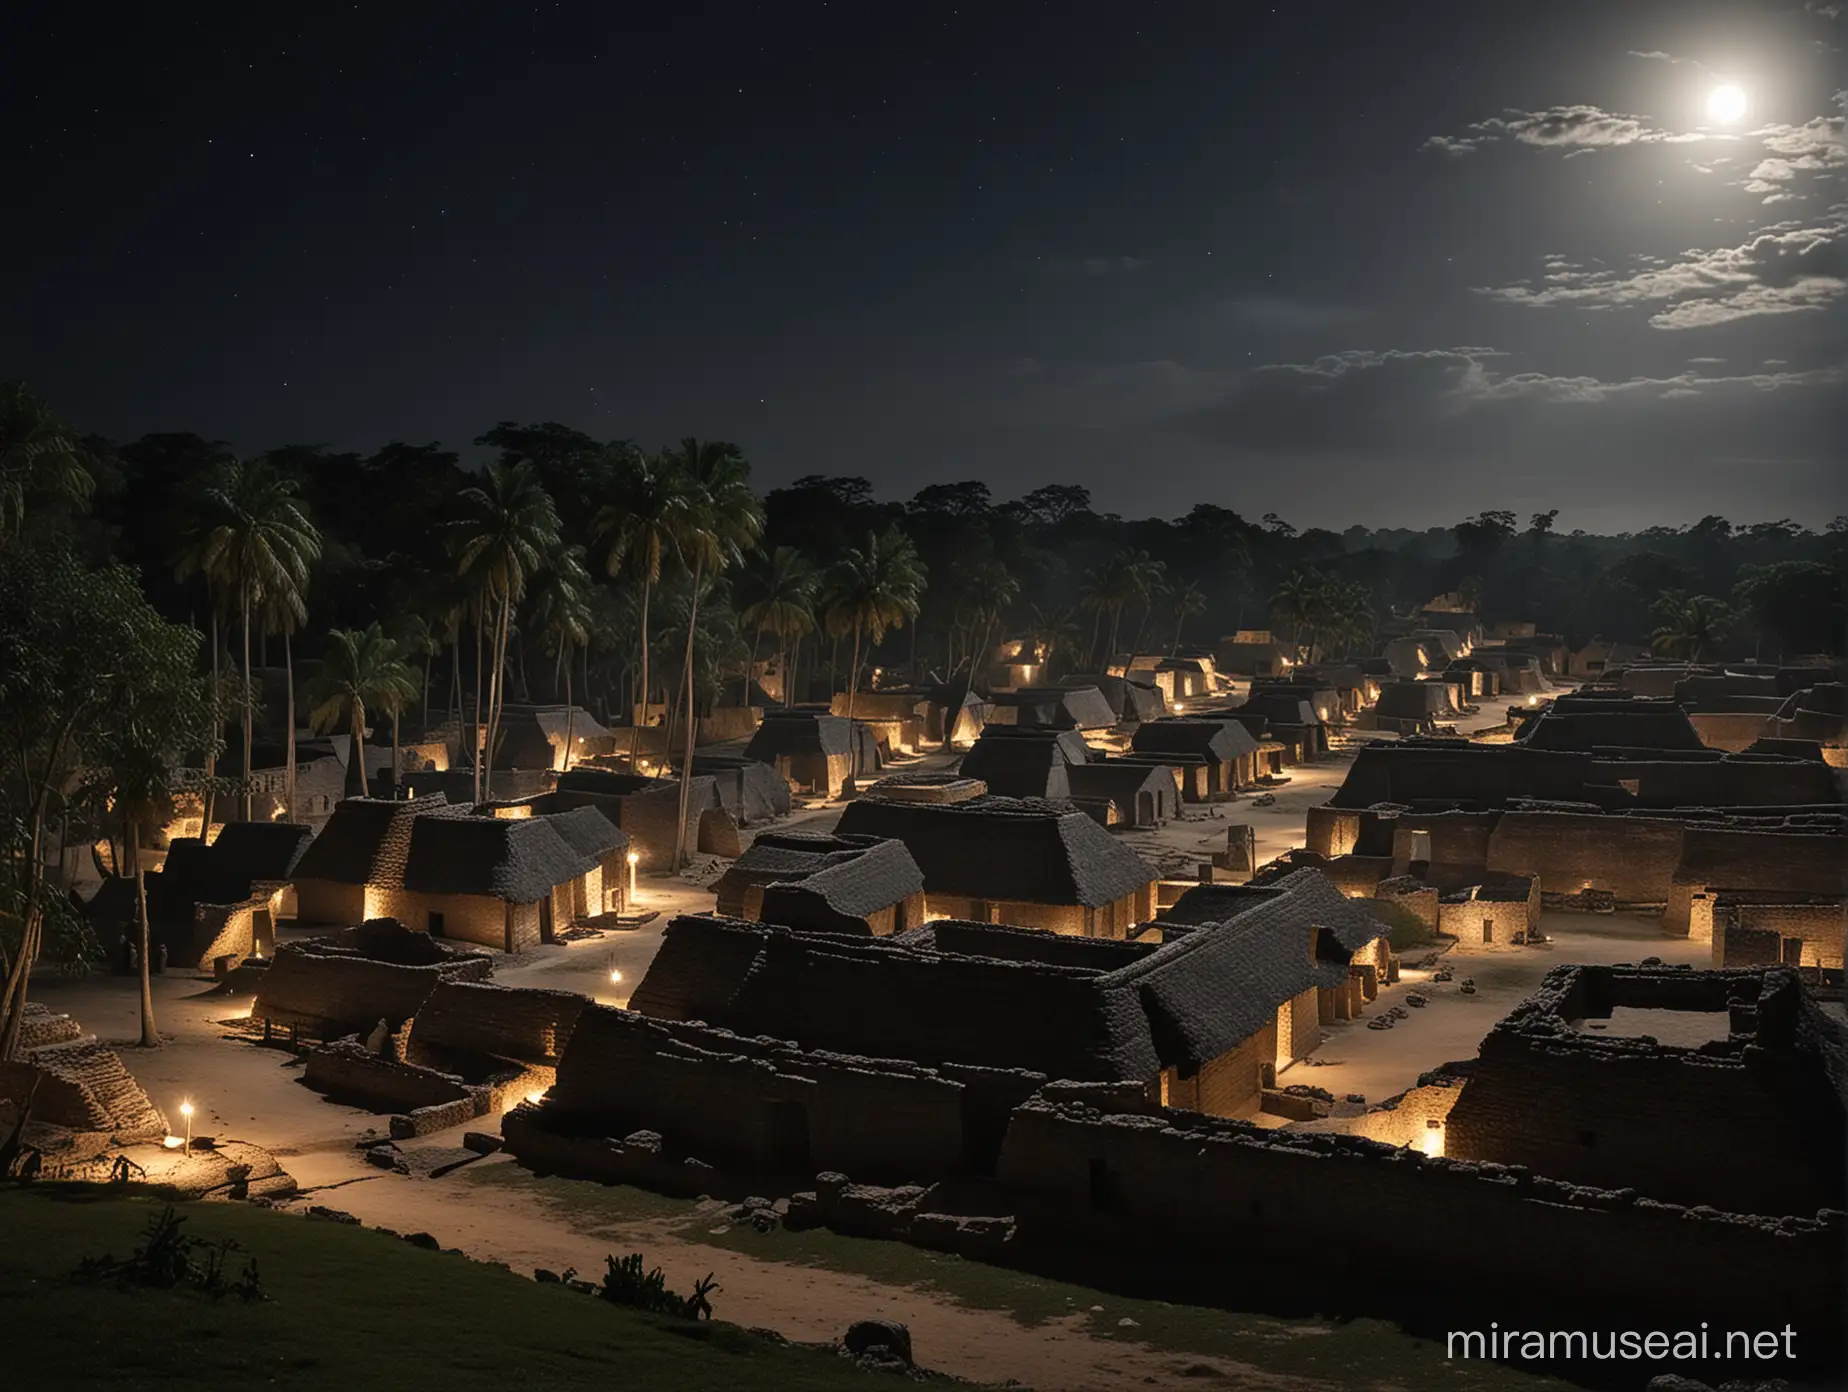 aldea antigua de la epoca de los mayas sin luz del siglo 1 en la noche